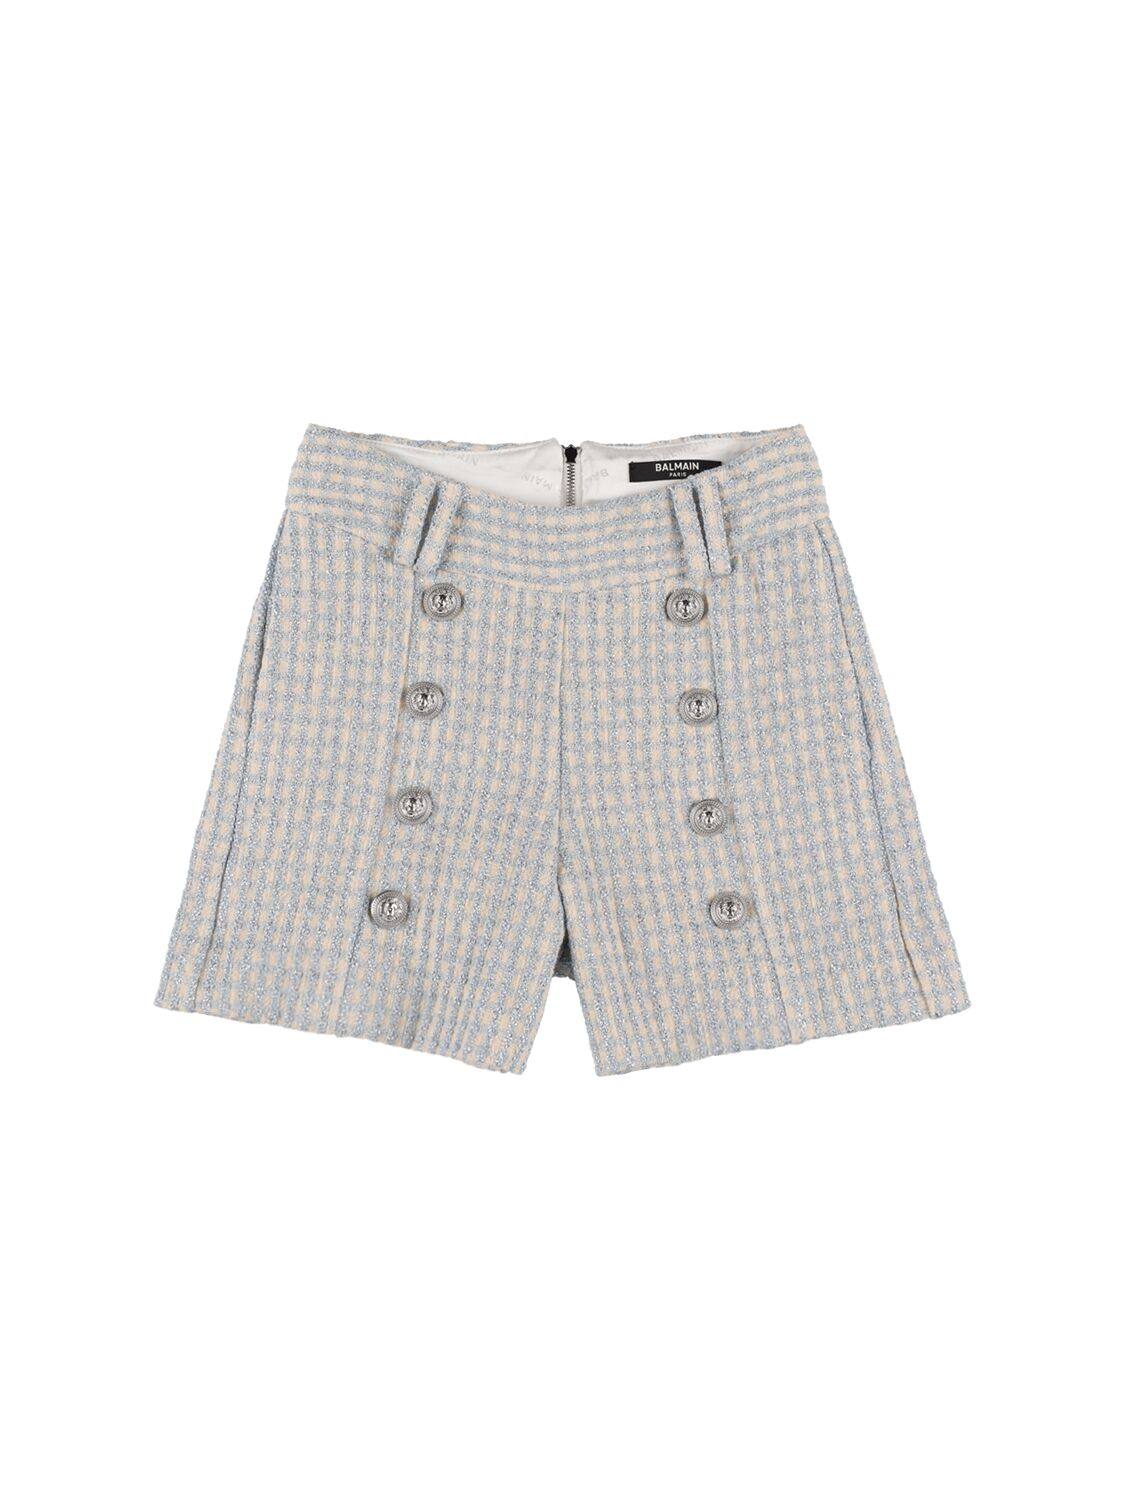 Balmain Kids' Lurex Jacquard Shorts In White,blue